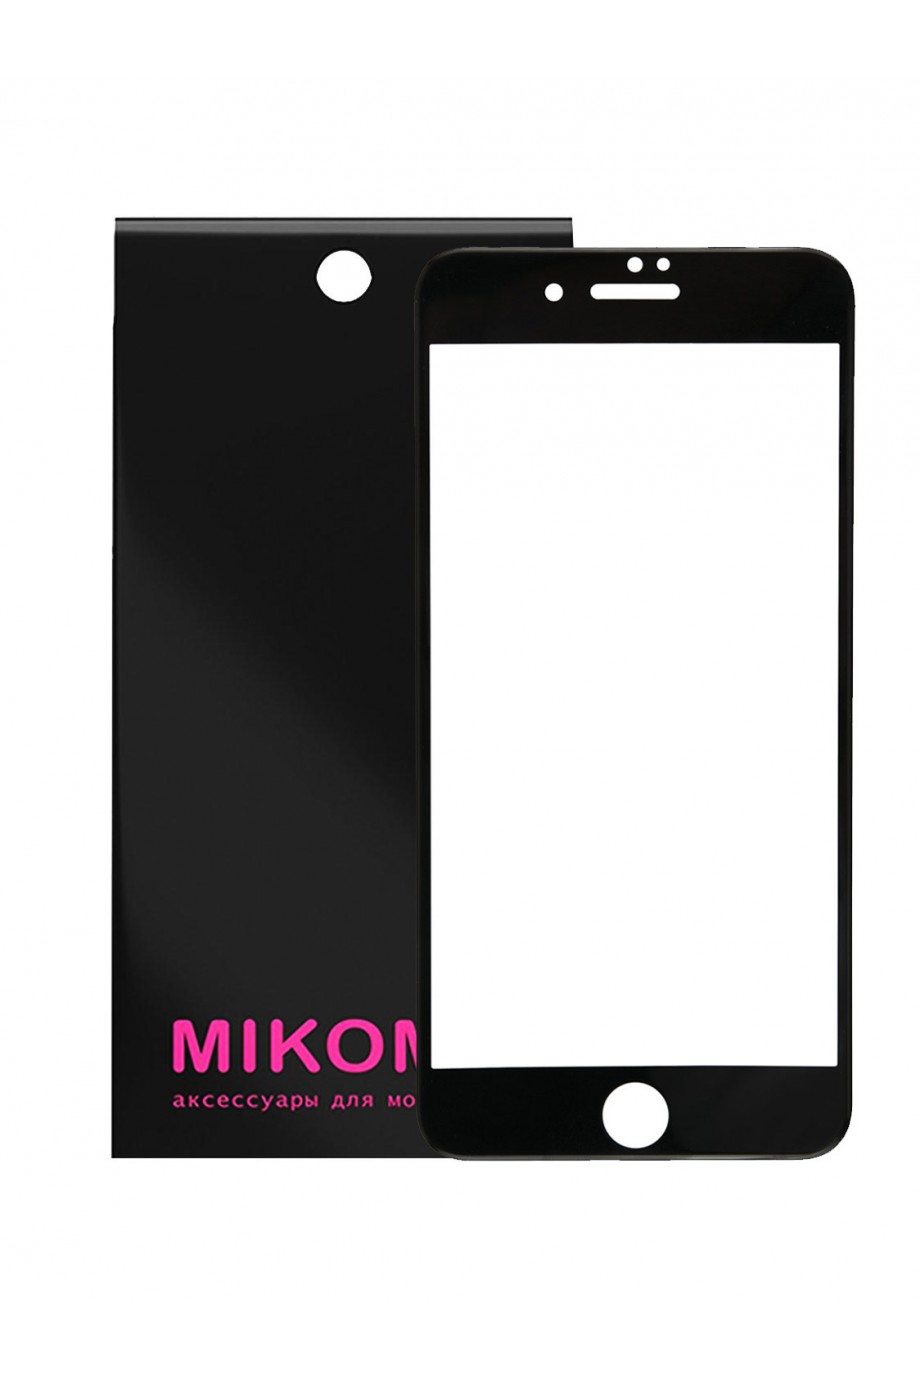 Защитное стекло 5D Mikomo для iPhone 6S, черная рамка, полный клей